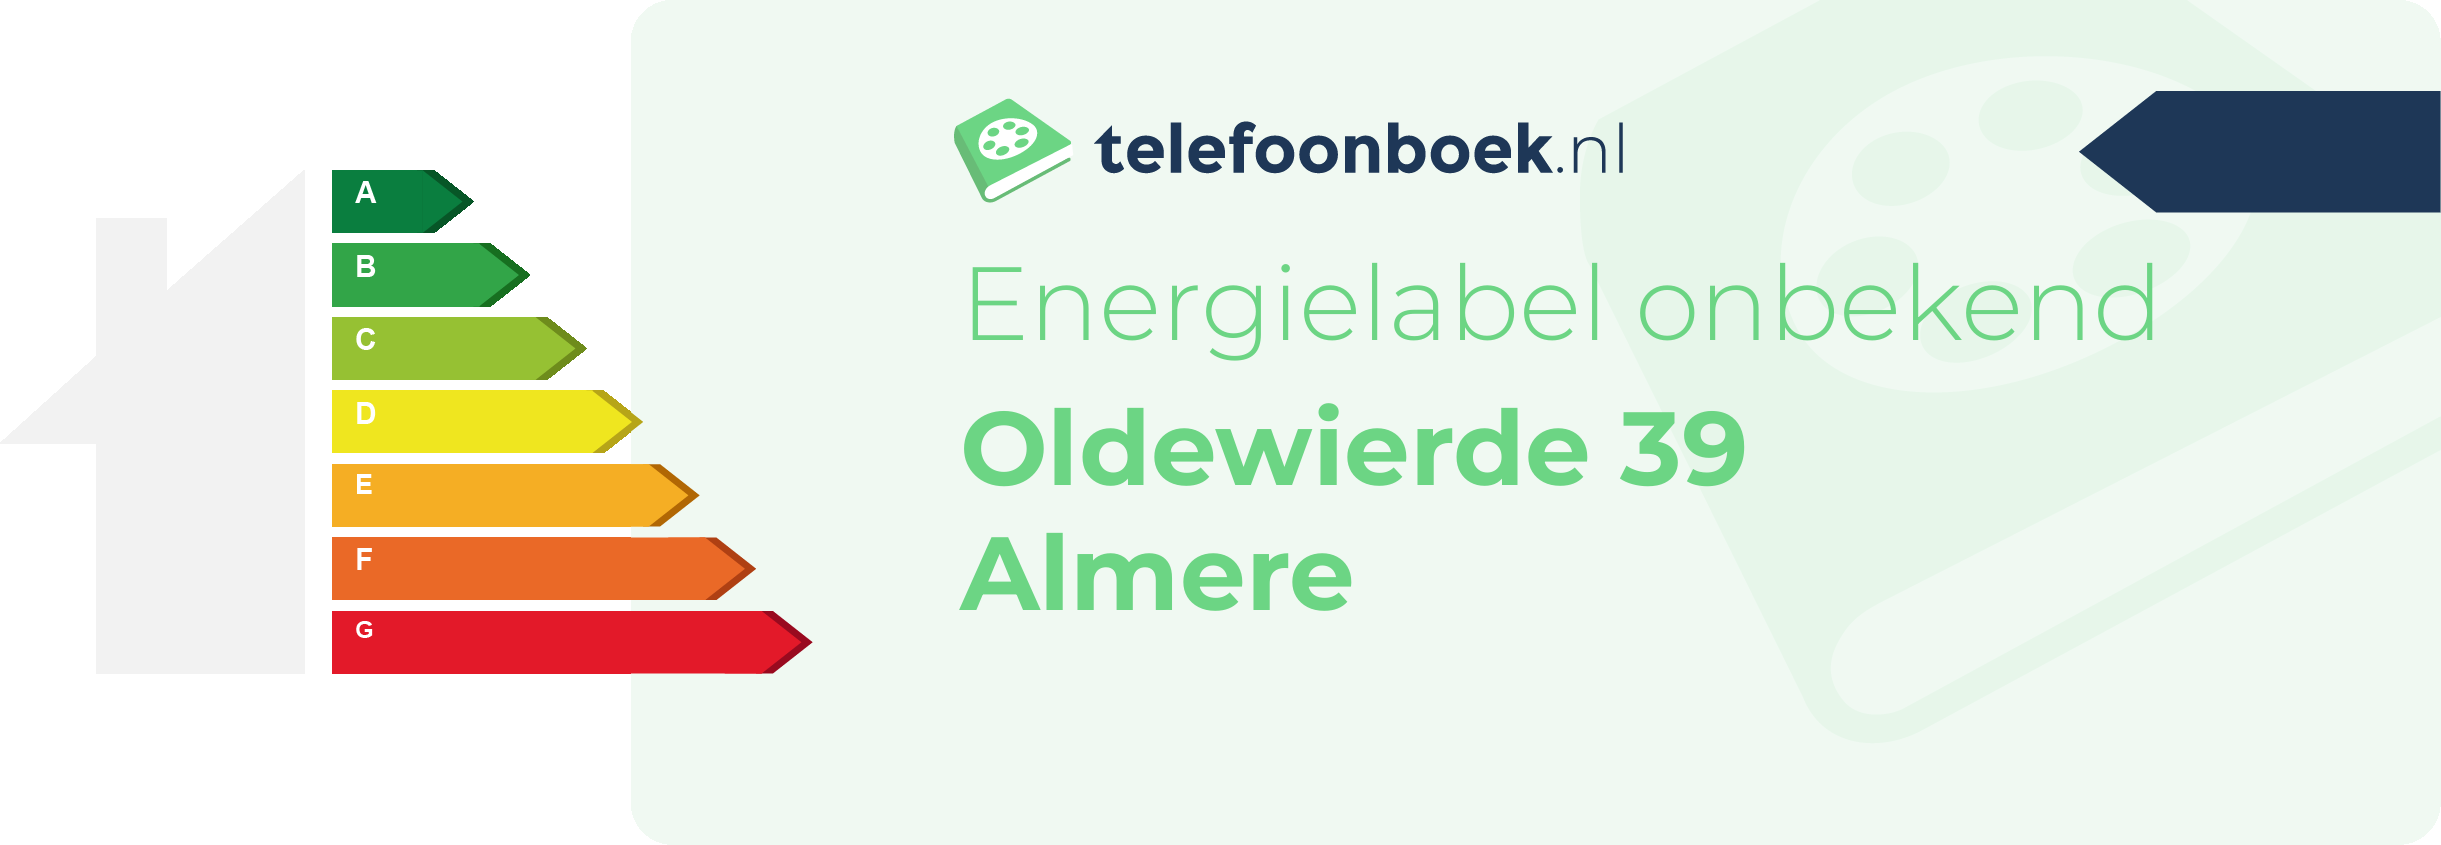 Energielabel Oldewierde 39 Almere